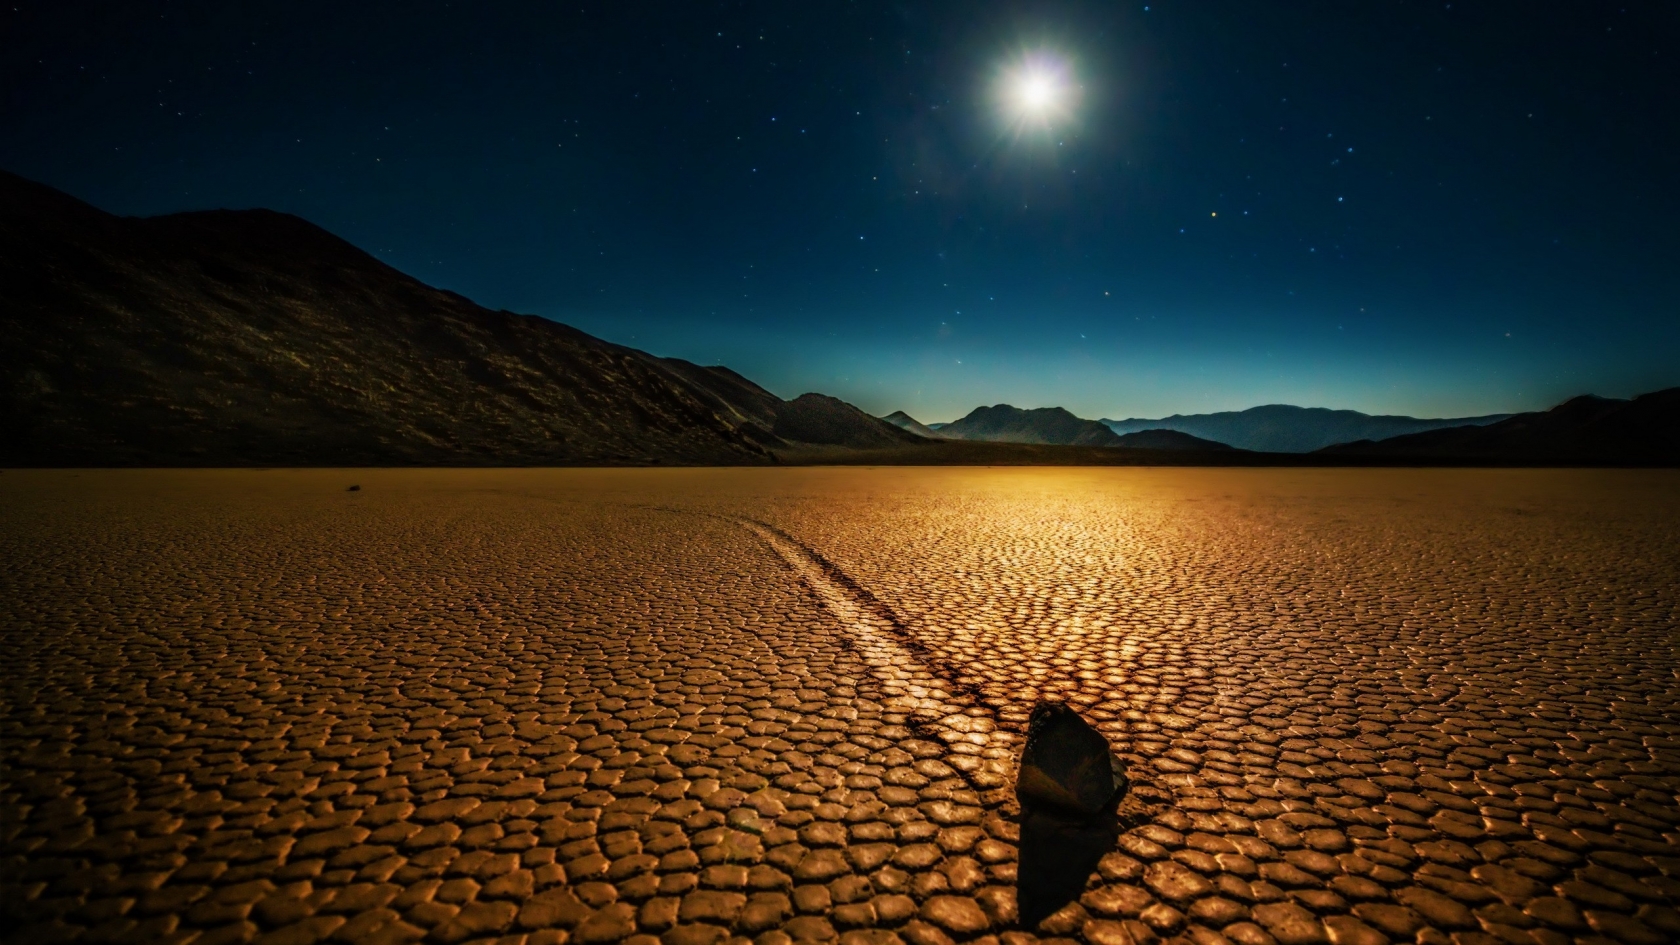 Desert Night Landscape for 1680 x 945 HDTV resolution